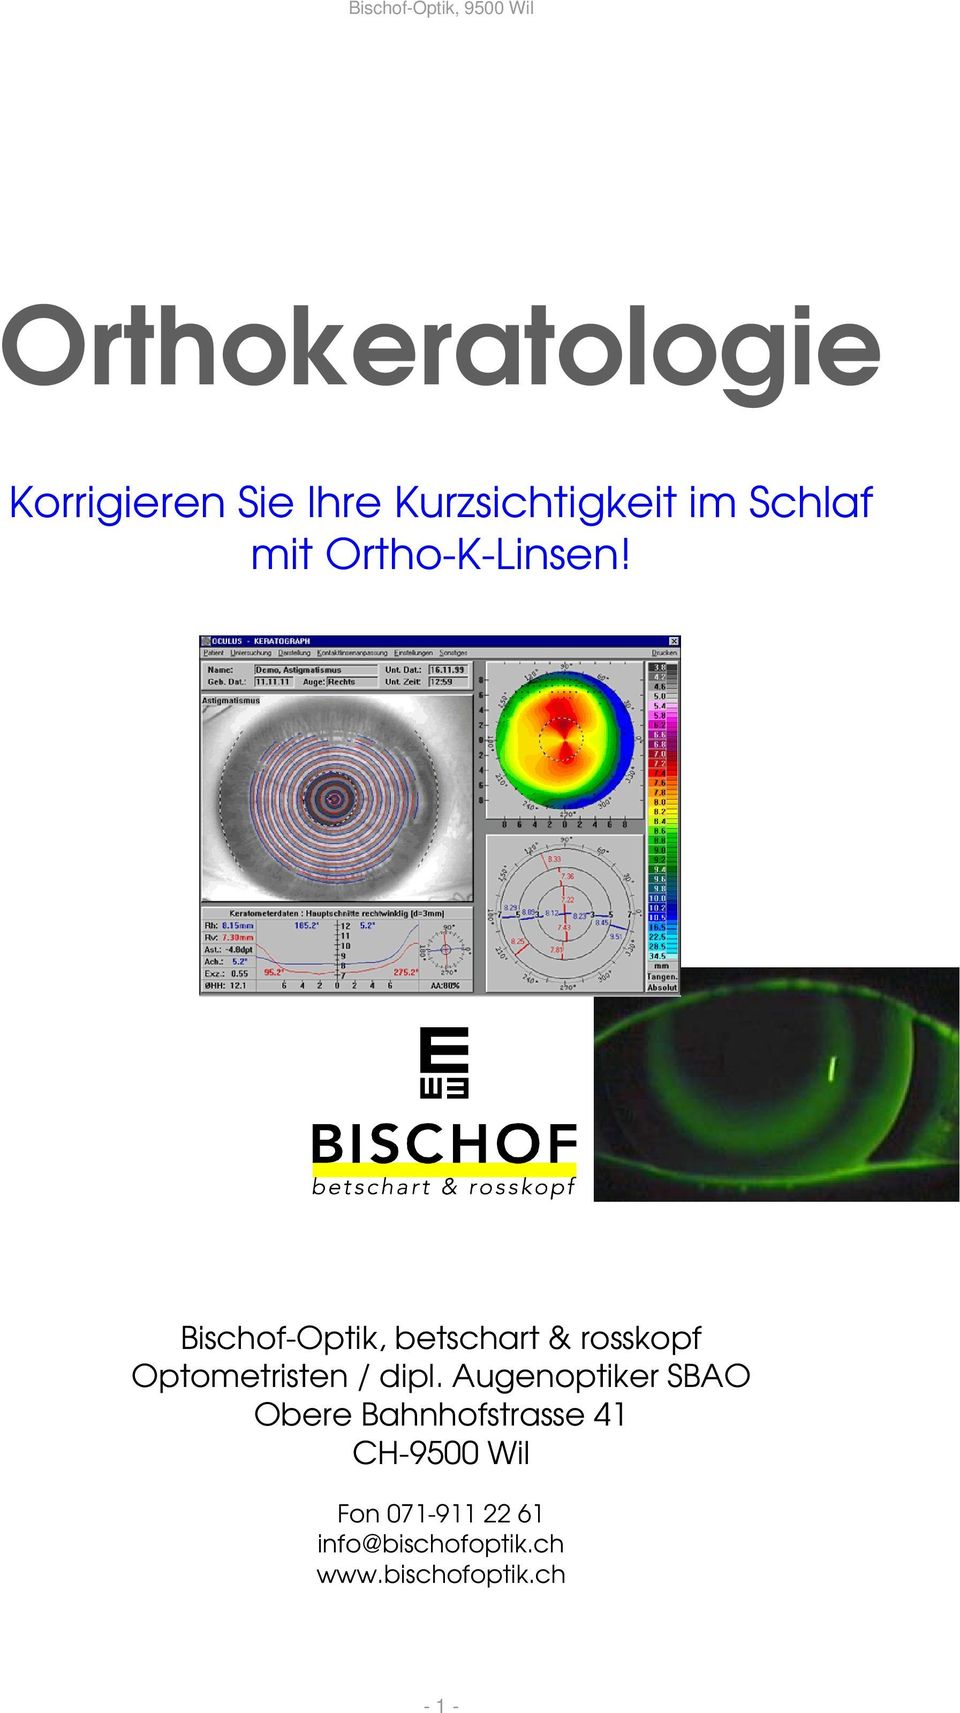 Bischof-Optik, betschart & rosskopf Optometristen / dipl.